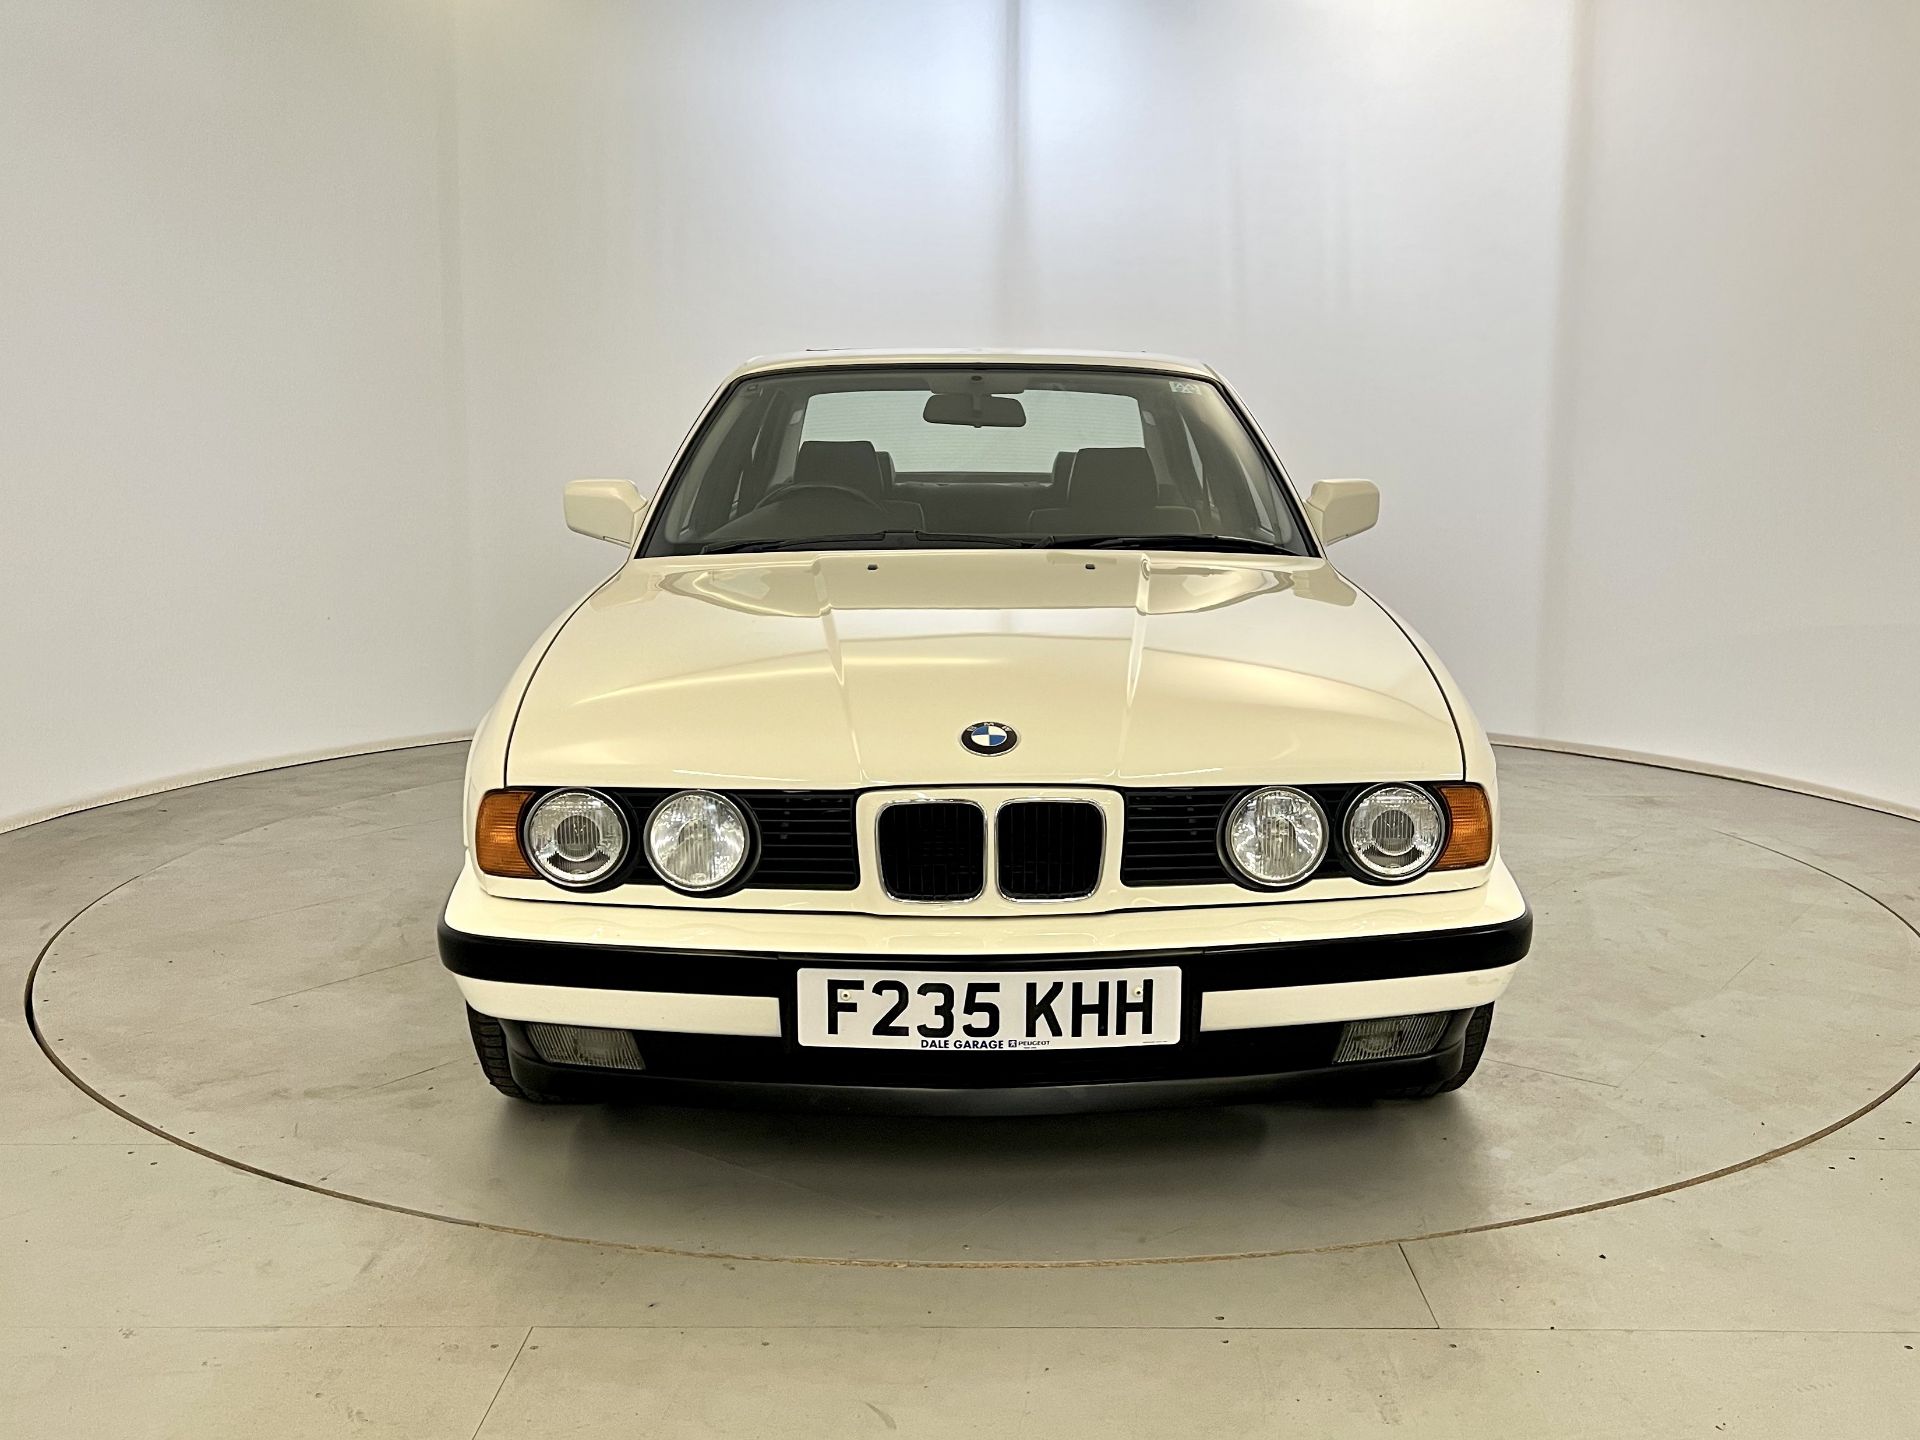 BMW 525i SE - Image 2 of 36